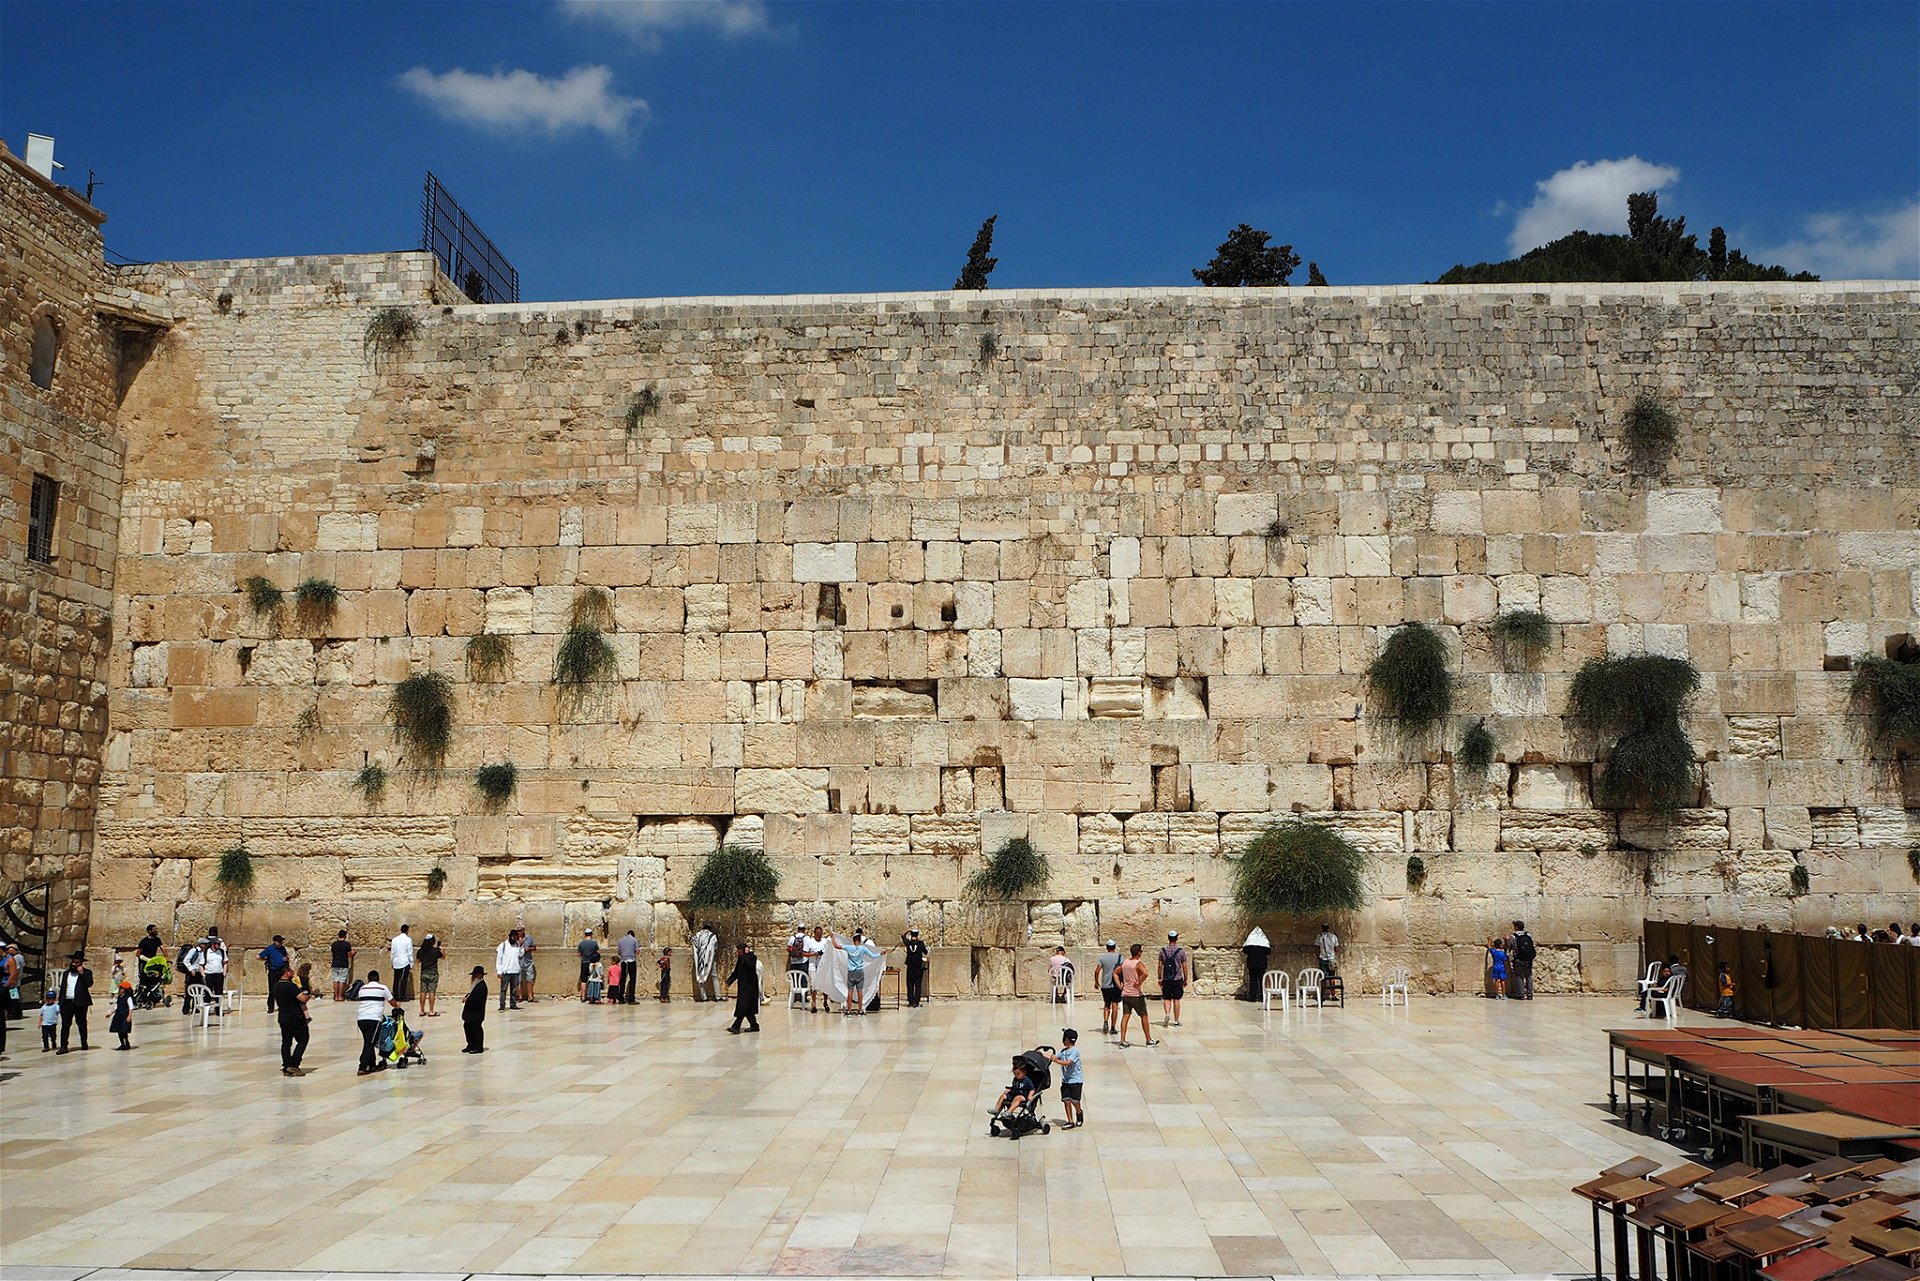 Die Klagemauer ist eines der berühmtesten religiösen und historischen Highlights von Jerusalem. 